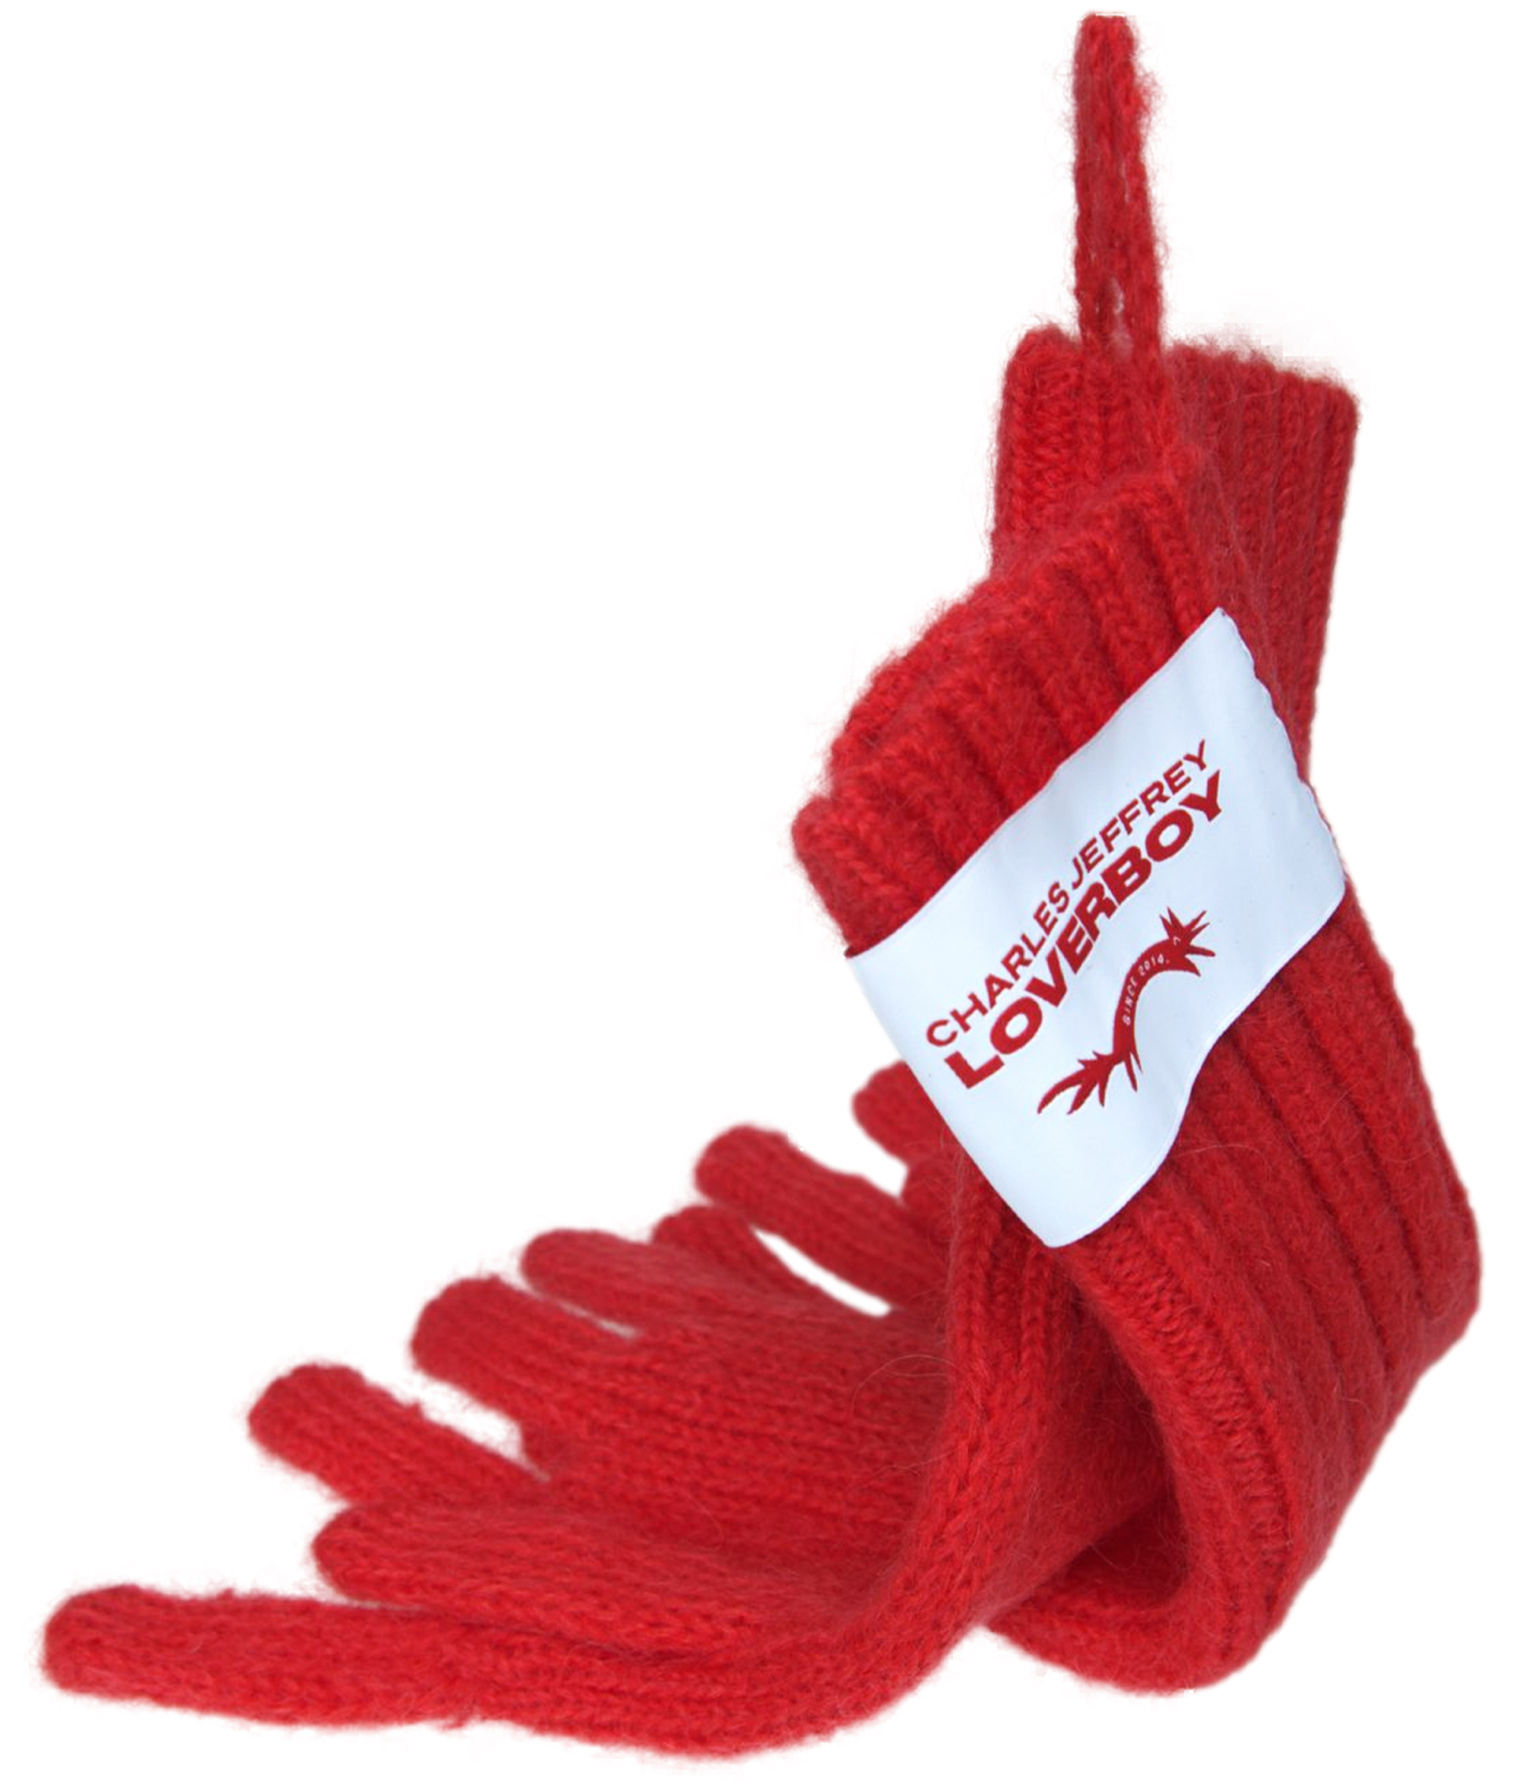 CHARLES JEFFREY LOVERBOY Красные перчатки с патчем